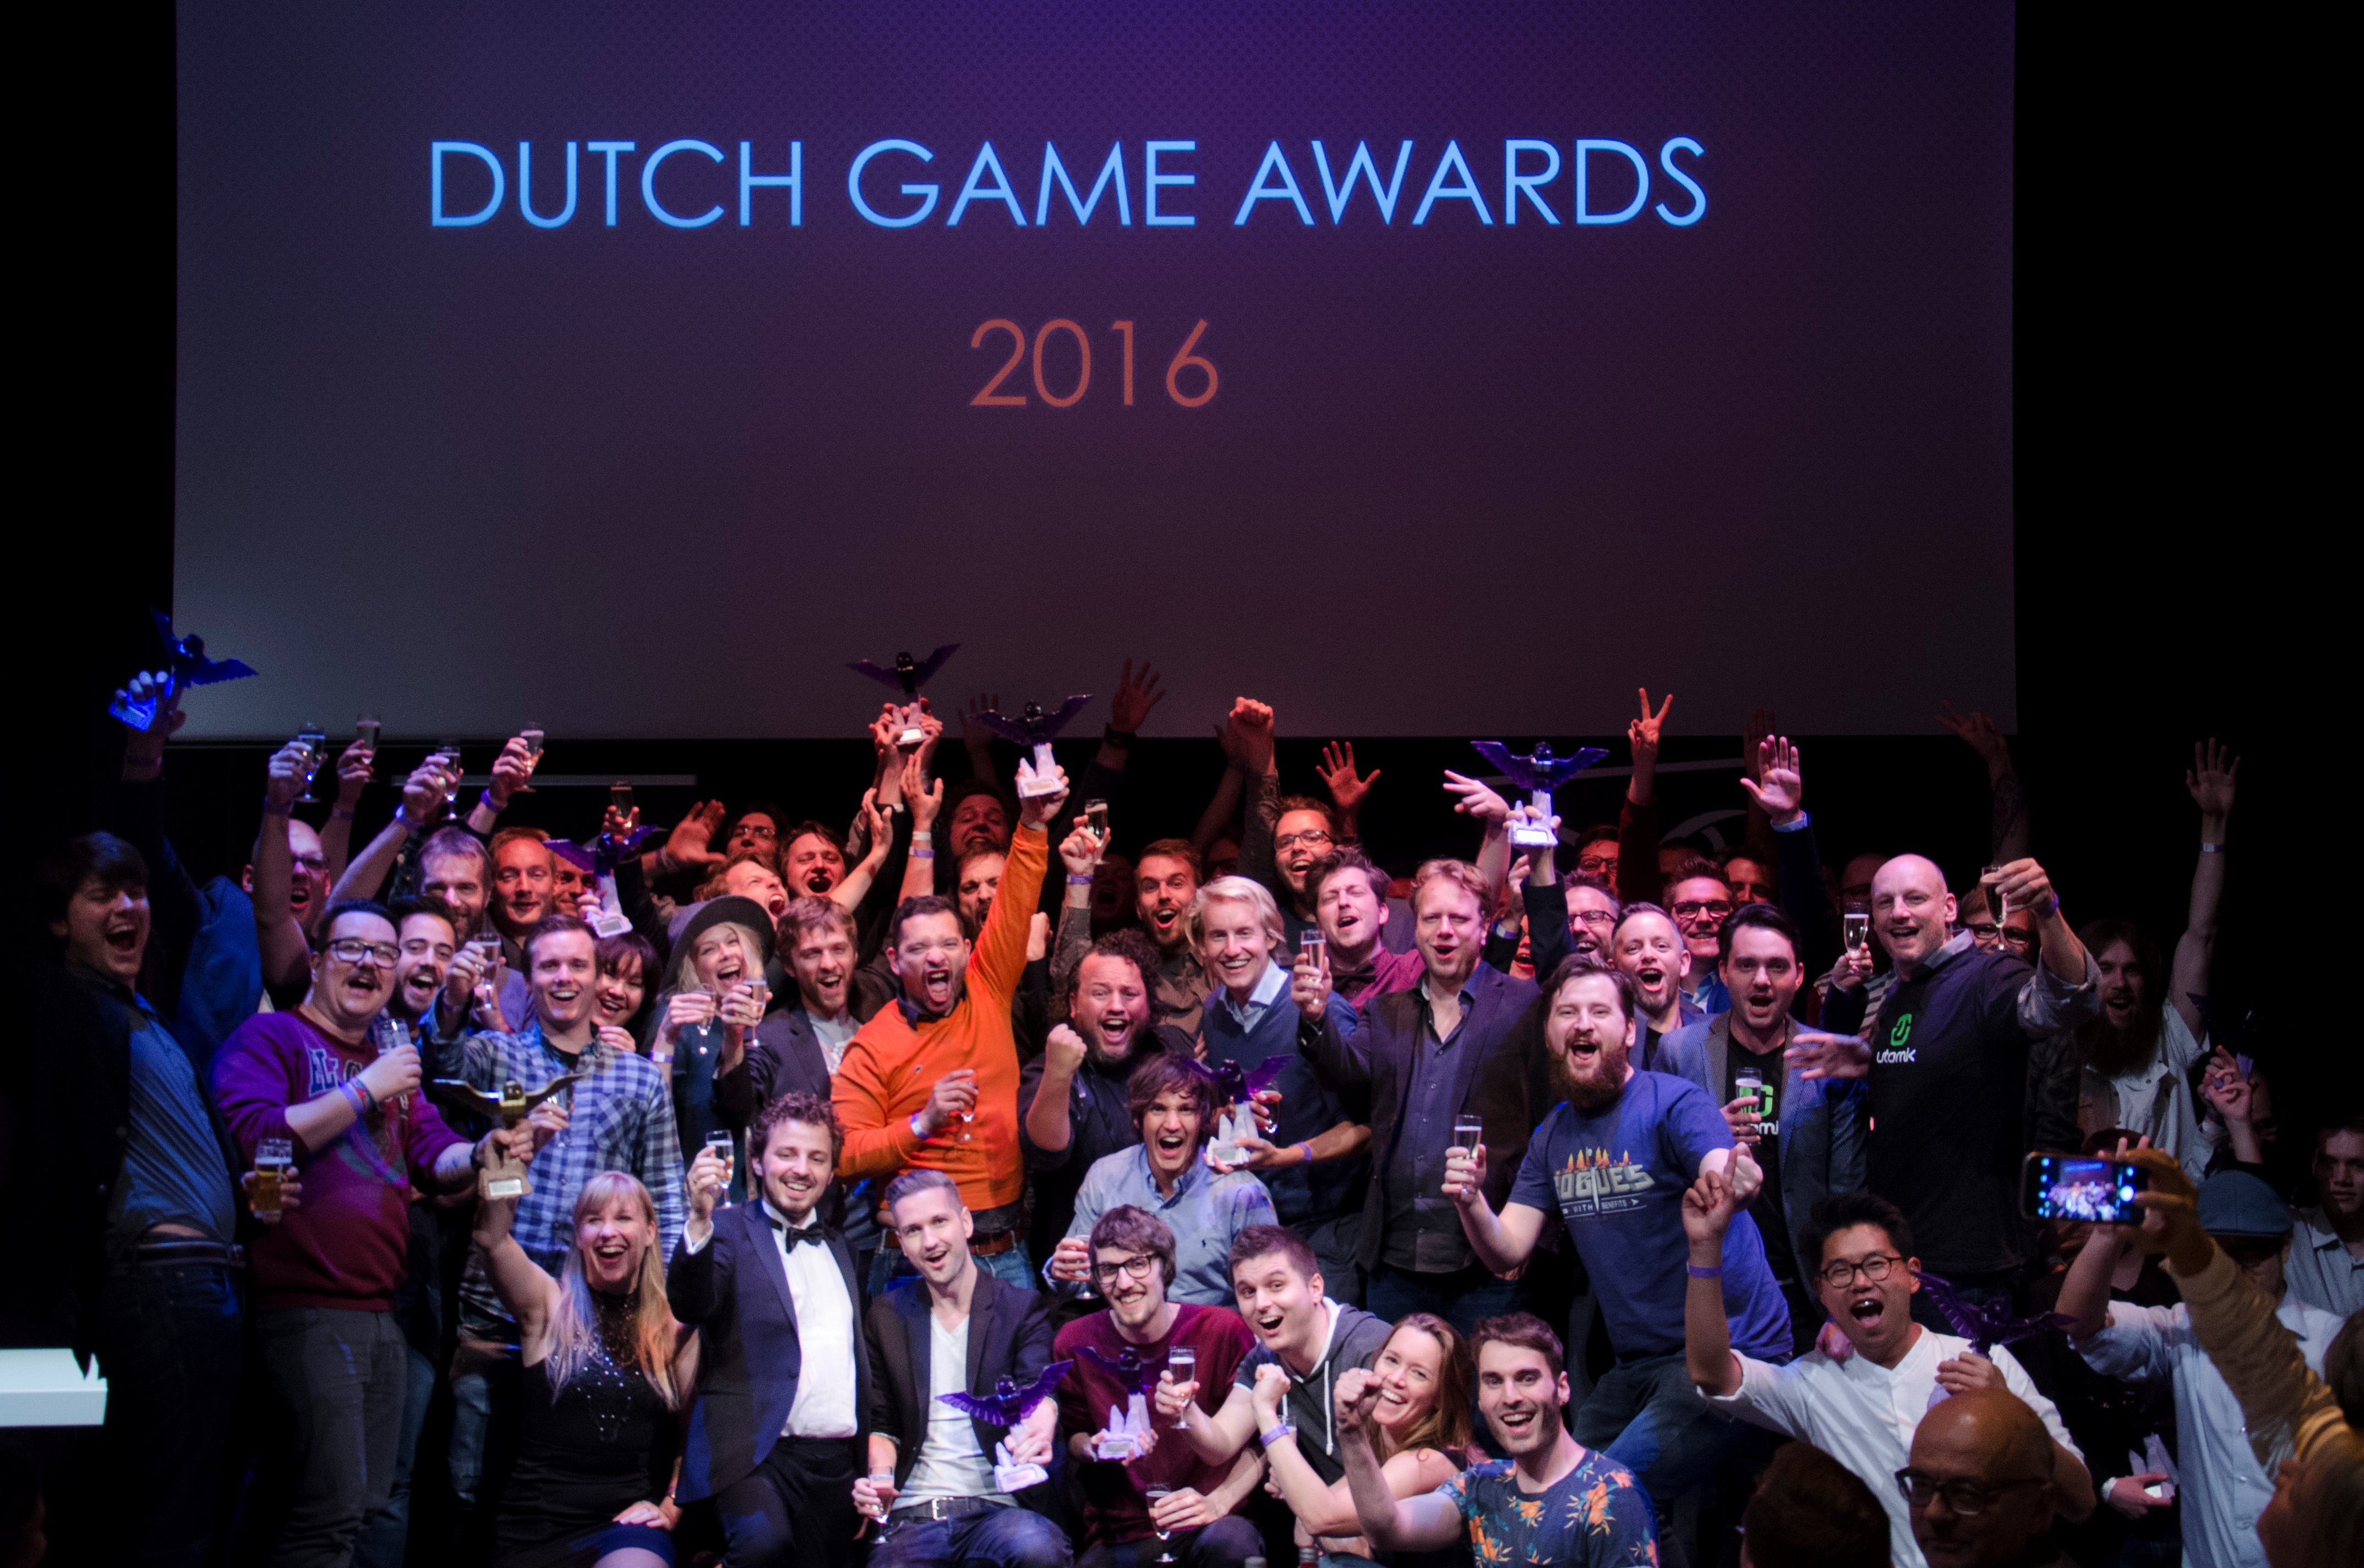 game-awards